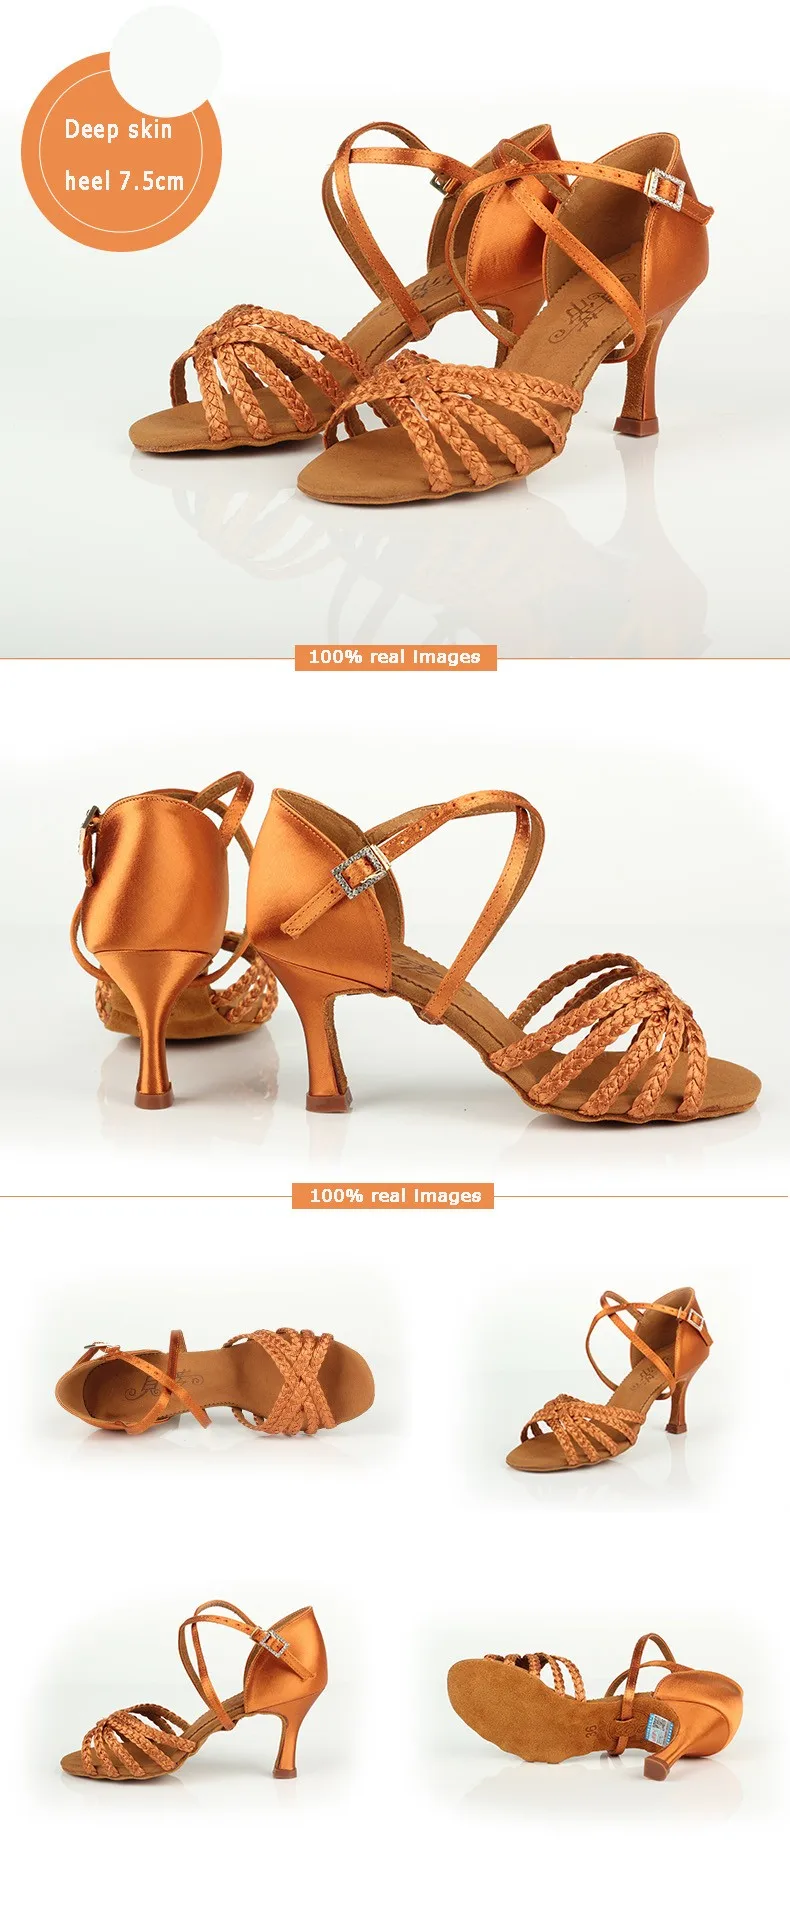 Обувь для латинских танцев; женская танцевальная обувь для женщин и девочек; импортная атласная Высококачественная обувь для профессиональных танцев; обувь для глубокого плетения кожи